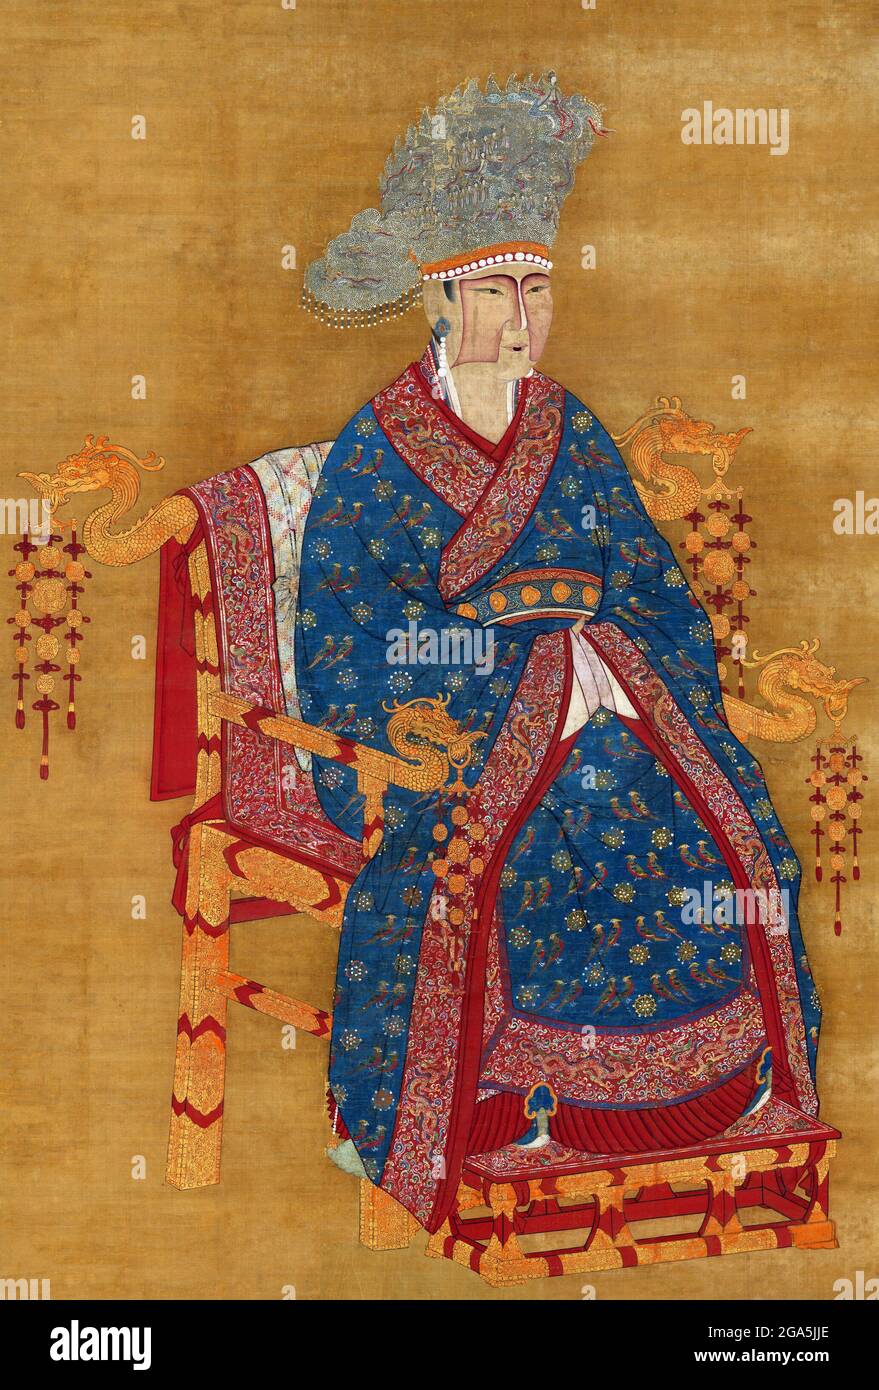 Cina: L'imperatrice Zhangxian Mingsu (969-1033), consorte dell'imperatore Zhenzong, 3° sovrano della dinastia Song (r.997-1022). Pittura a spirale appesa, dinastia Song (960-1279). Lady Liu, formalmente Zhangxian Mingsu, era la consorte dell'Imperatore Zhenzong della Dinastia Song. Inizialmente, intrattenitrice e ballerina, catturò l'occhio del giovane Zhenzong, che allora era conosciuto come Principe Zhao Yuanxiu, e le fece il suo consorte quando divenne imperatore. Alla fine divenne imperatrice e fu di fatto co-governante e reggente quando l'imperatore fu malato dal 1020 fino al 1022. Ha anche servito come reggente per la sua adozione Foto Stock